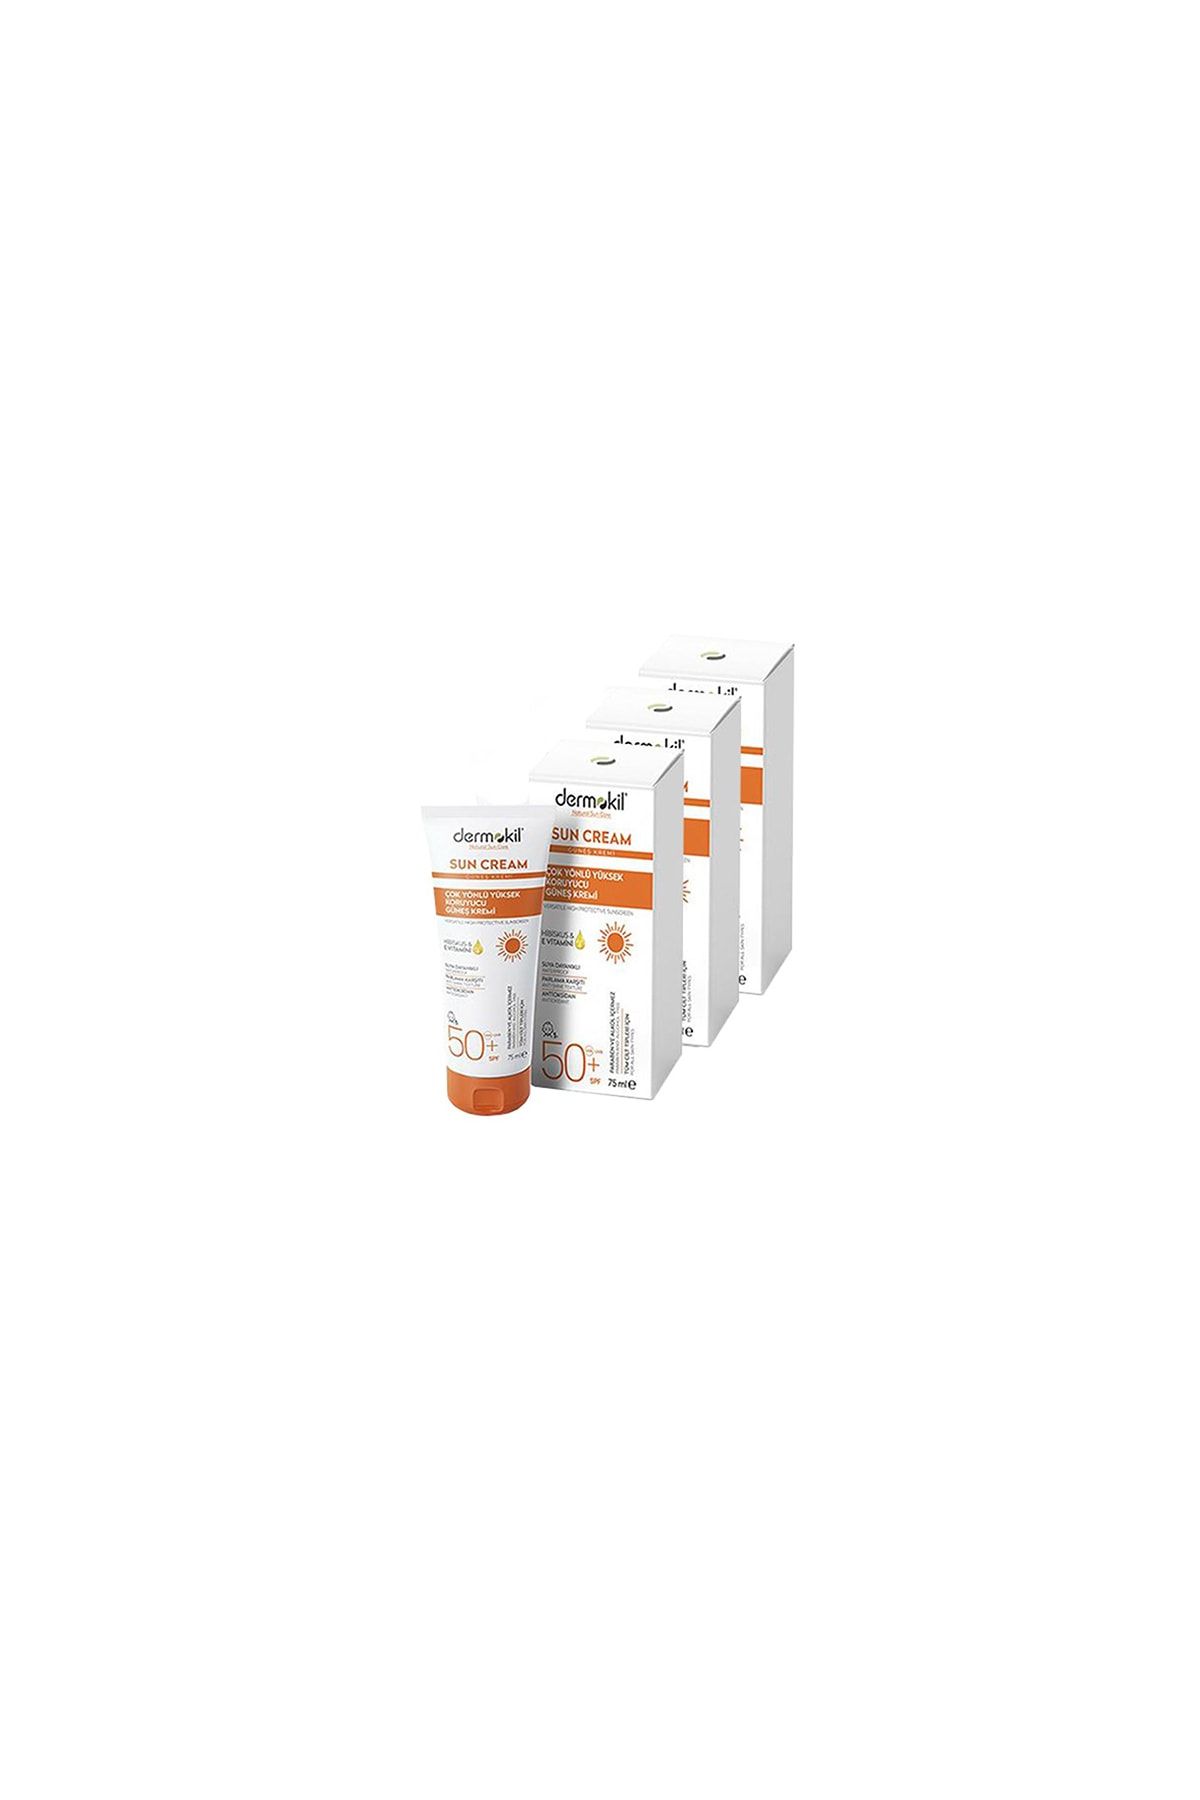 Dermokil Sun Cream-Çok Yönlü Yüksek Koruyucu Güneş Kremi 50 SPF 75 ml x 3 Adet